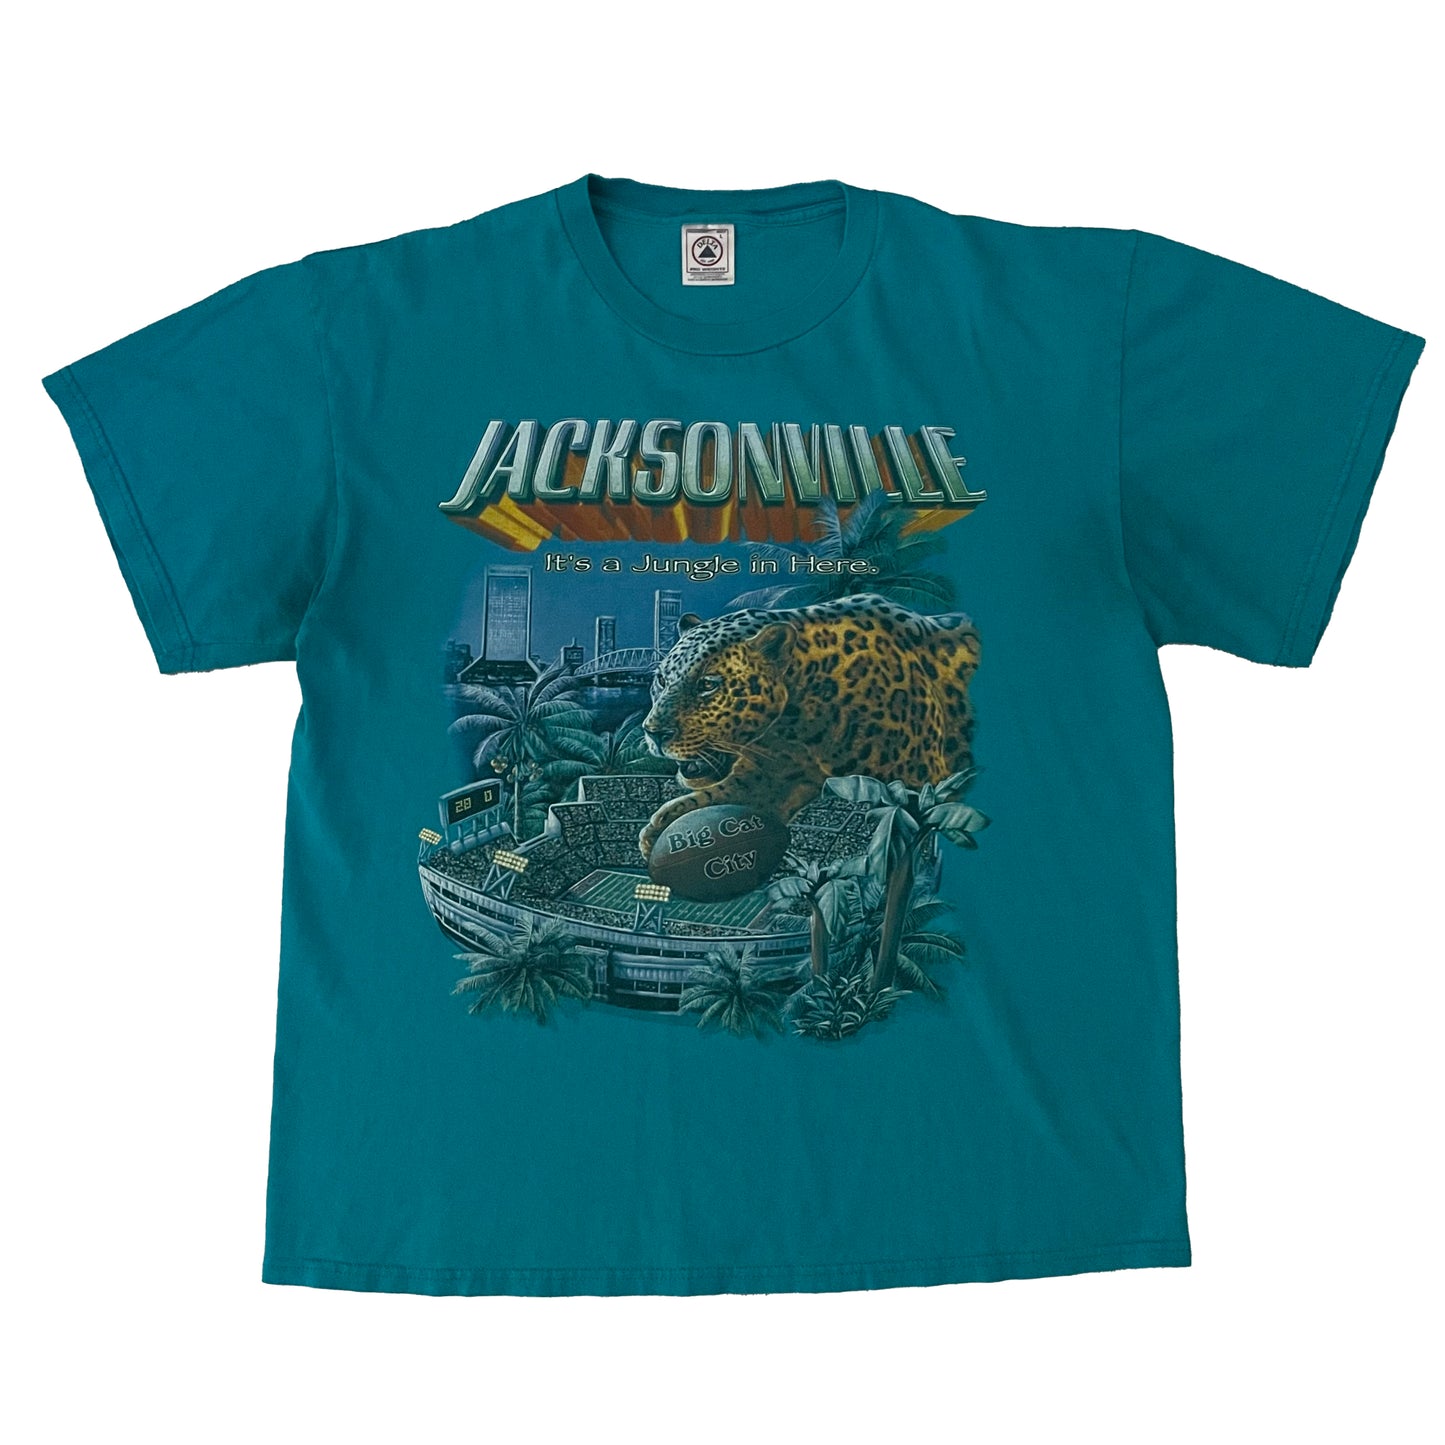 Jacksonville Jaguars Big Cat City shirt size LARGE